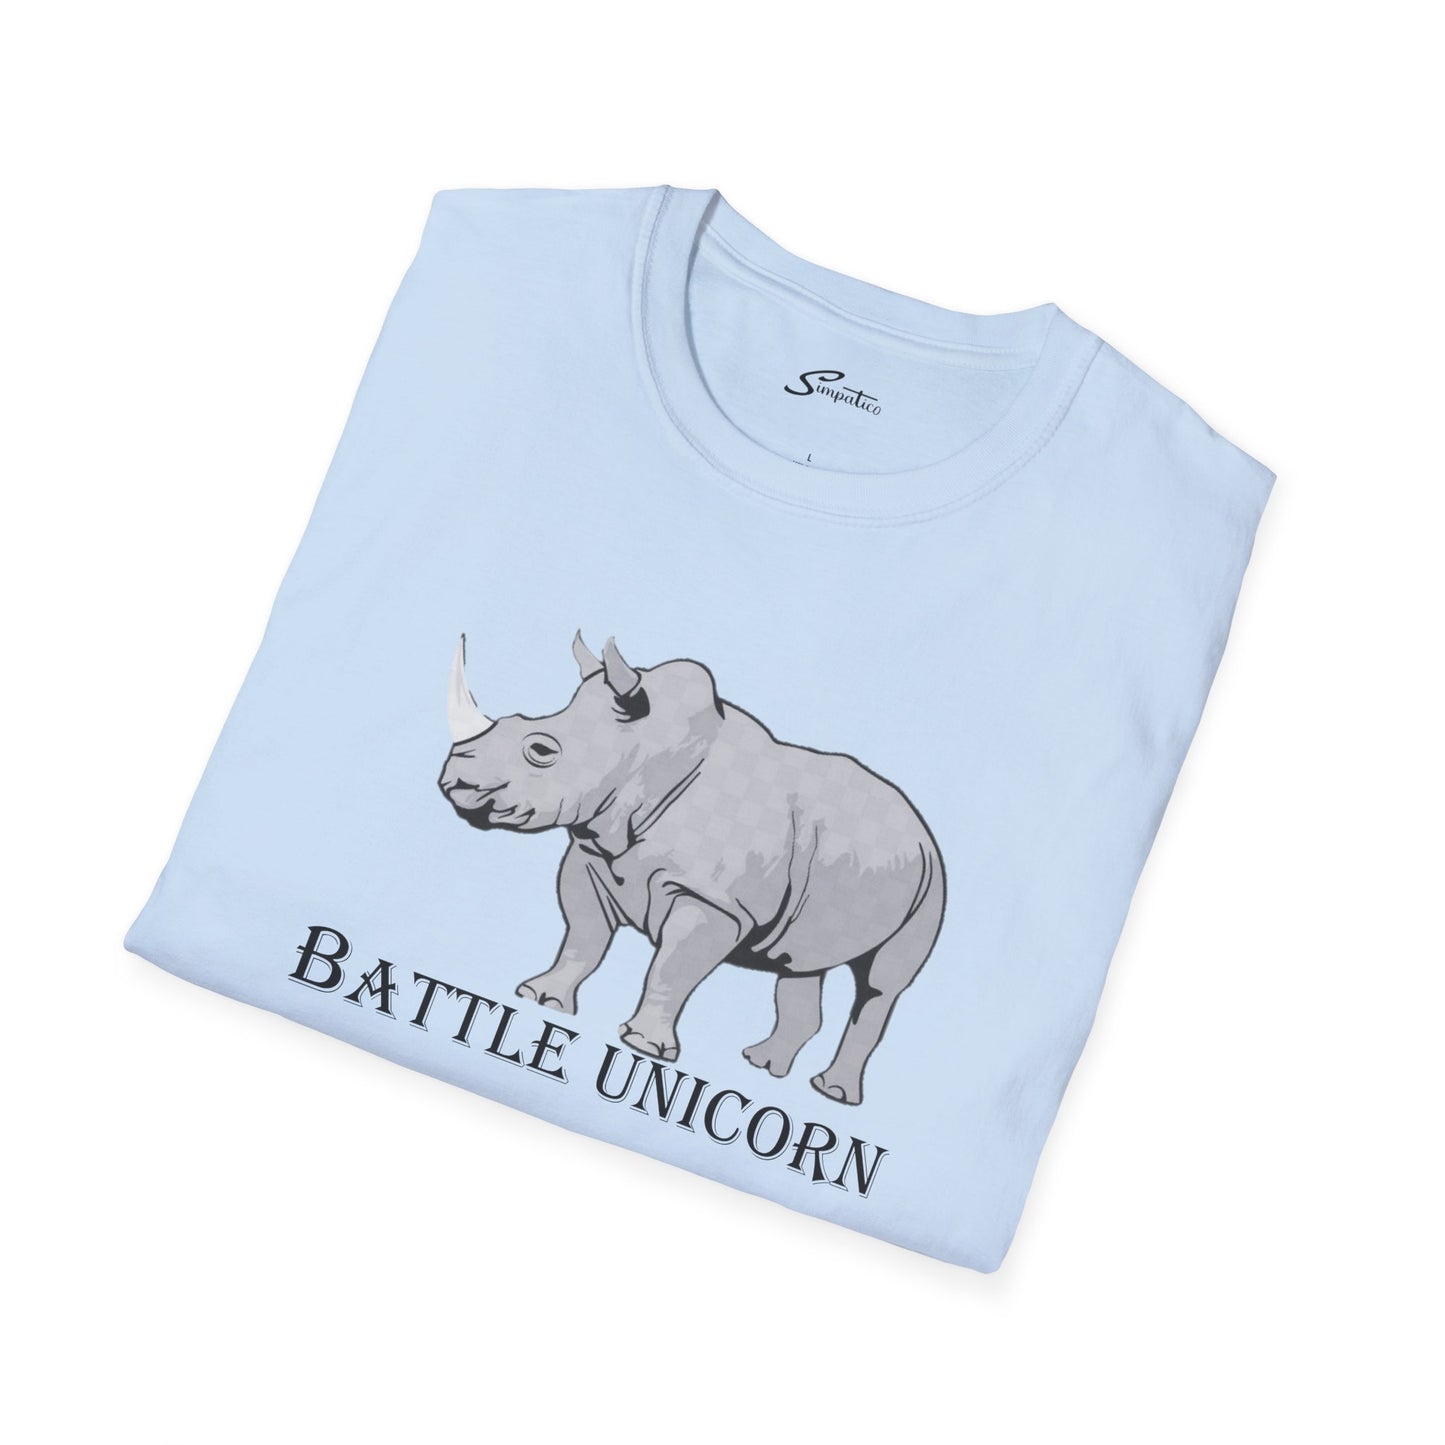 Battle Unicorn T-Shirt